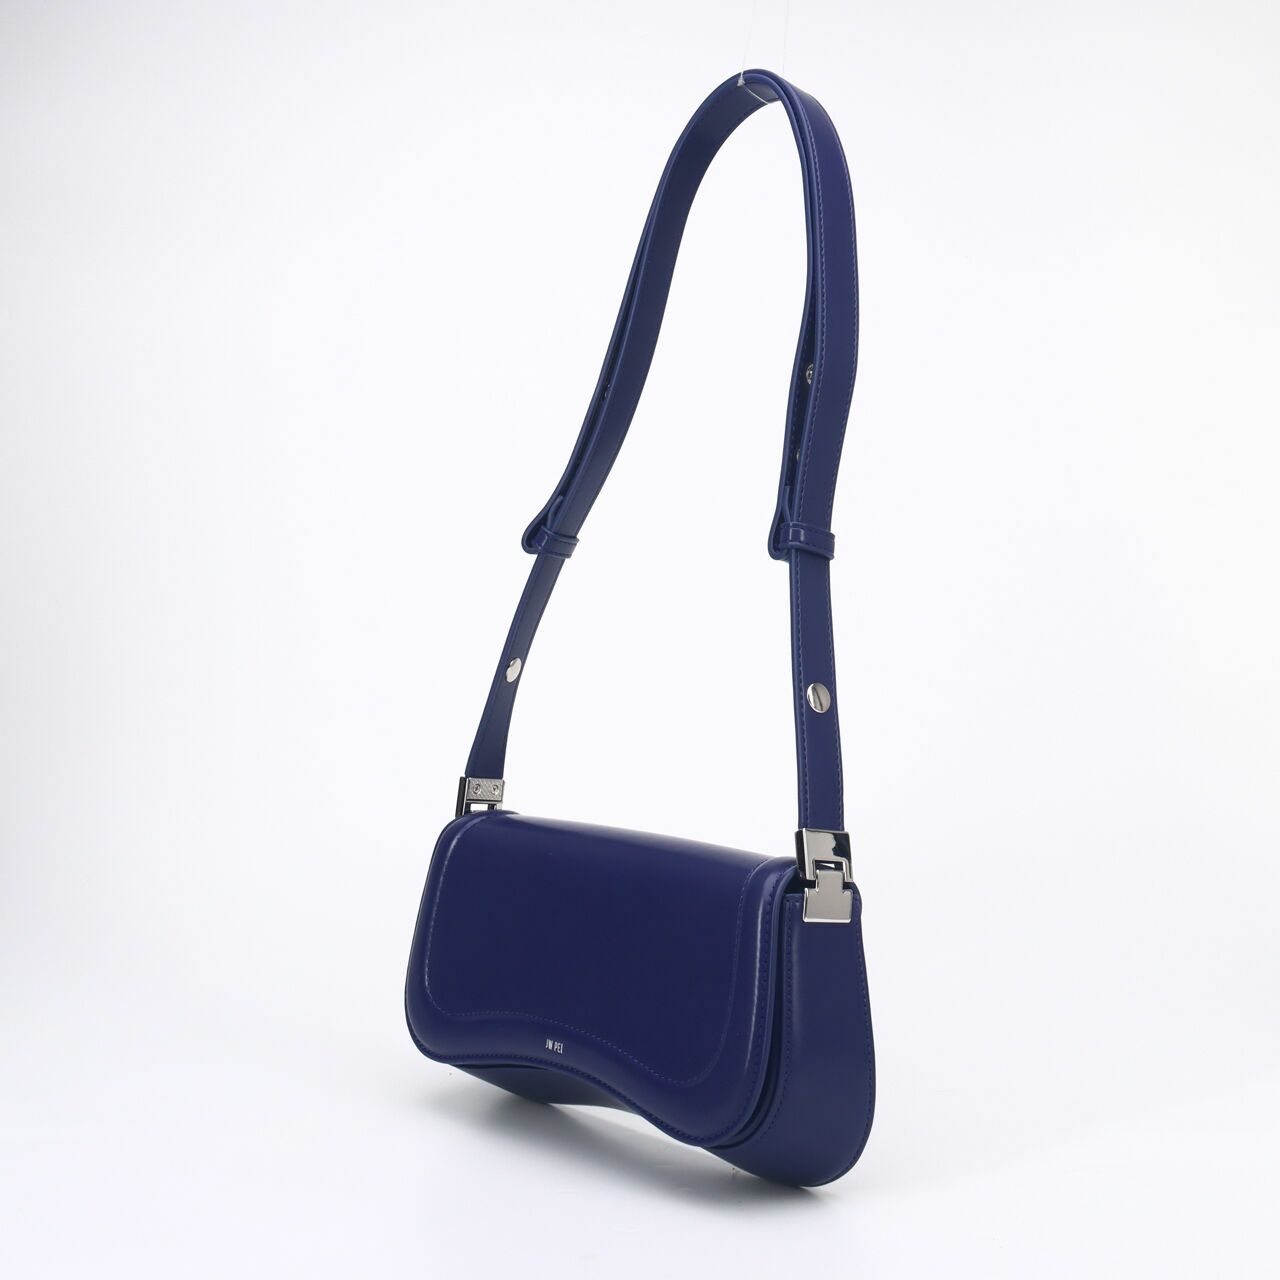  JW PEI Women's FEI Joy Shoulder Bag Blue